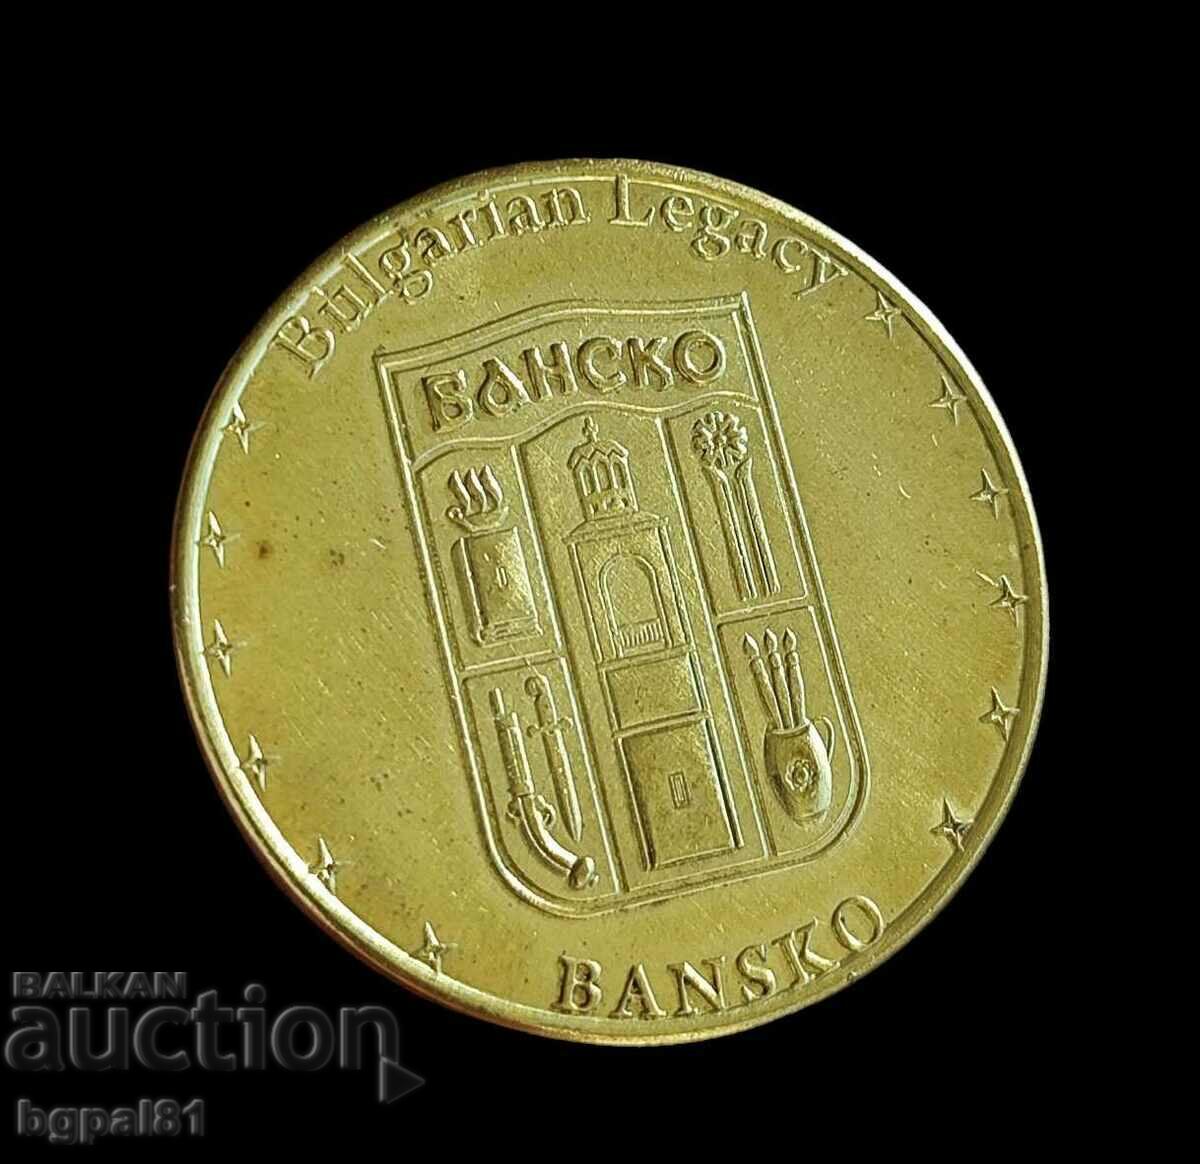 Bansko - "Bulgarian legacy" medal issue